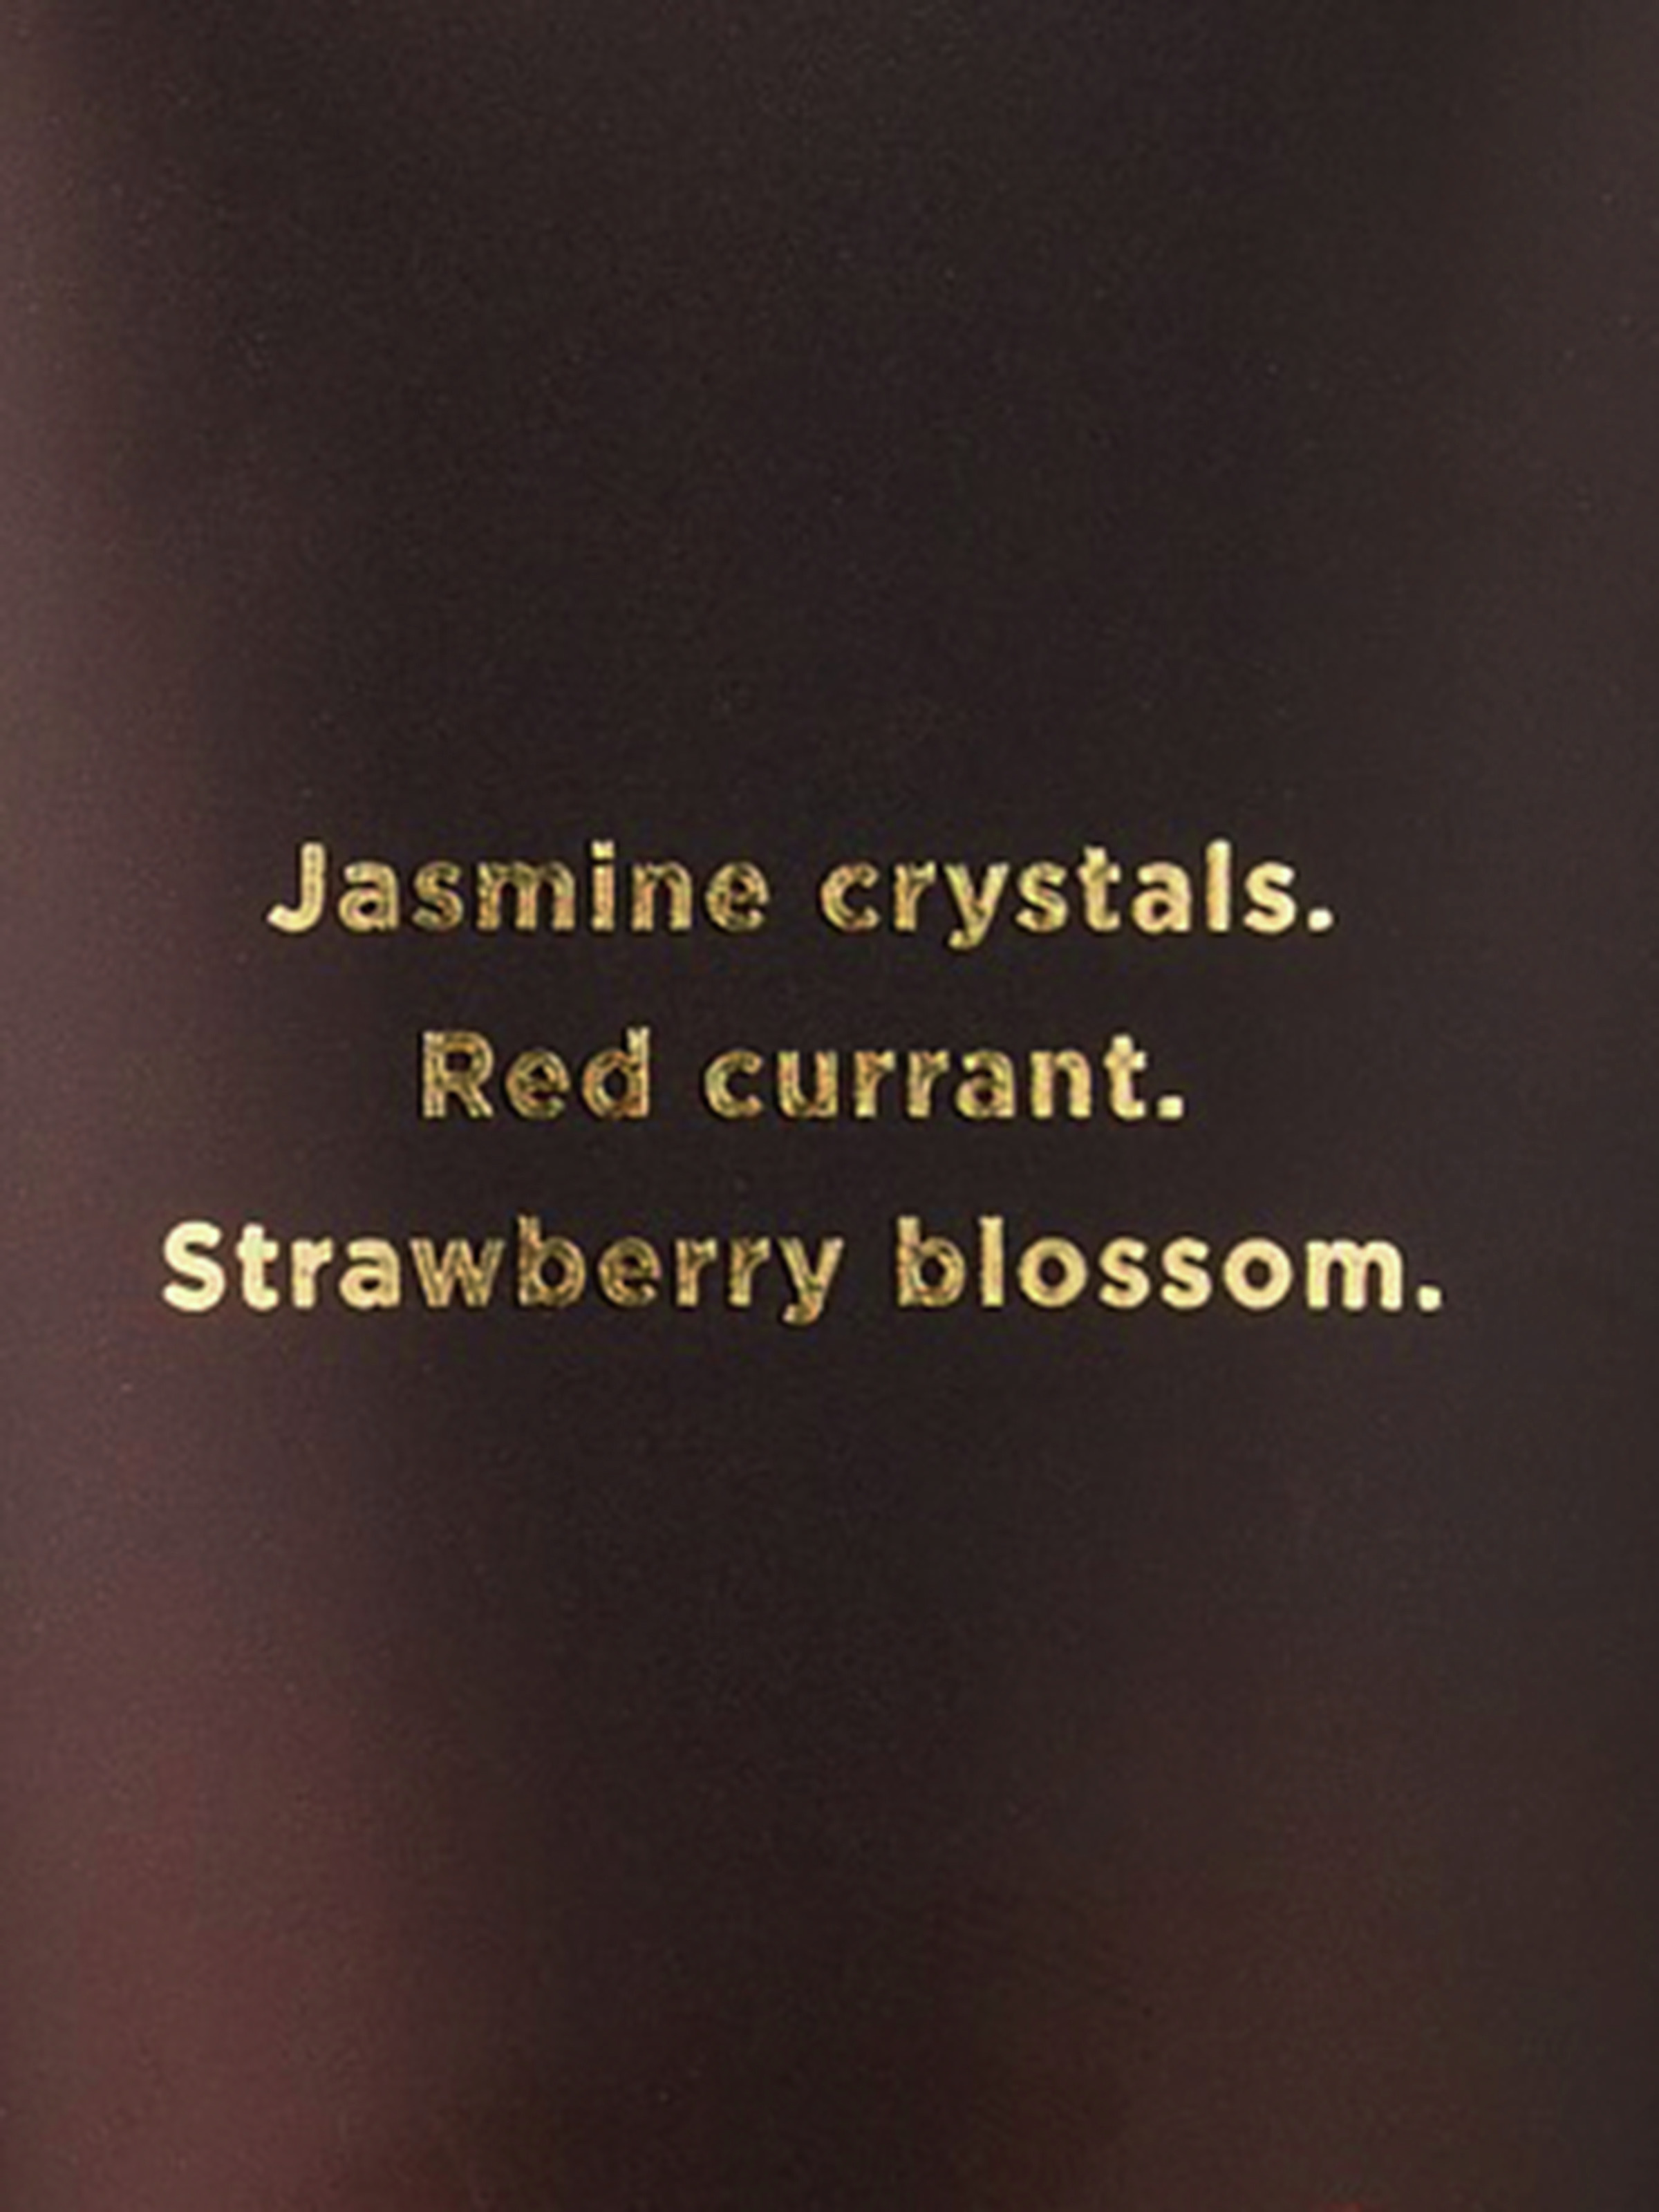 Collezione Esclusiva Di Creme Profumate Corpo Per Il Ramadan – Jasmine Ruby Berry, Description, large